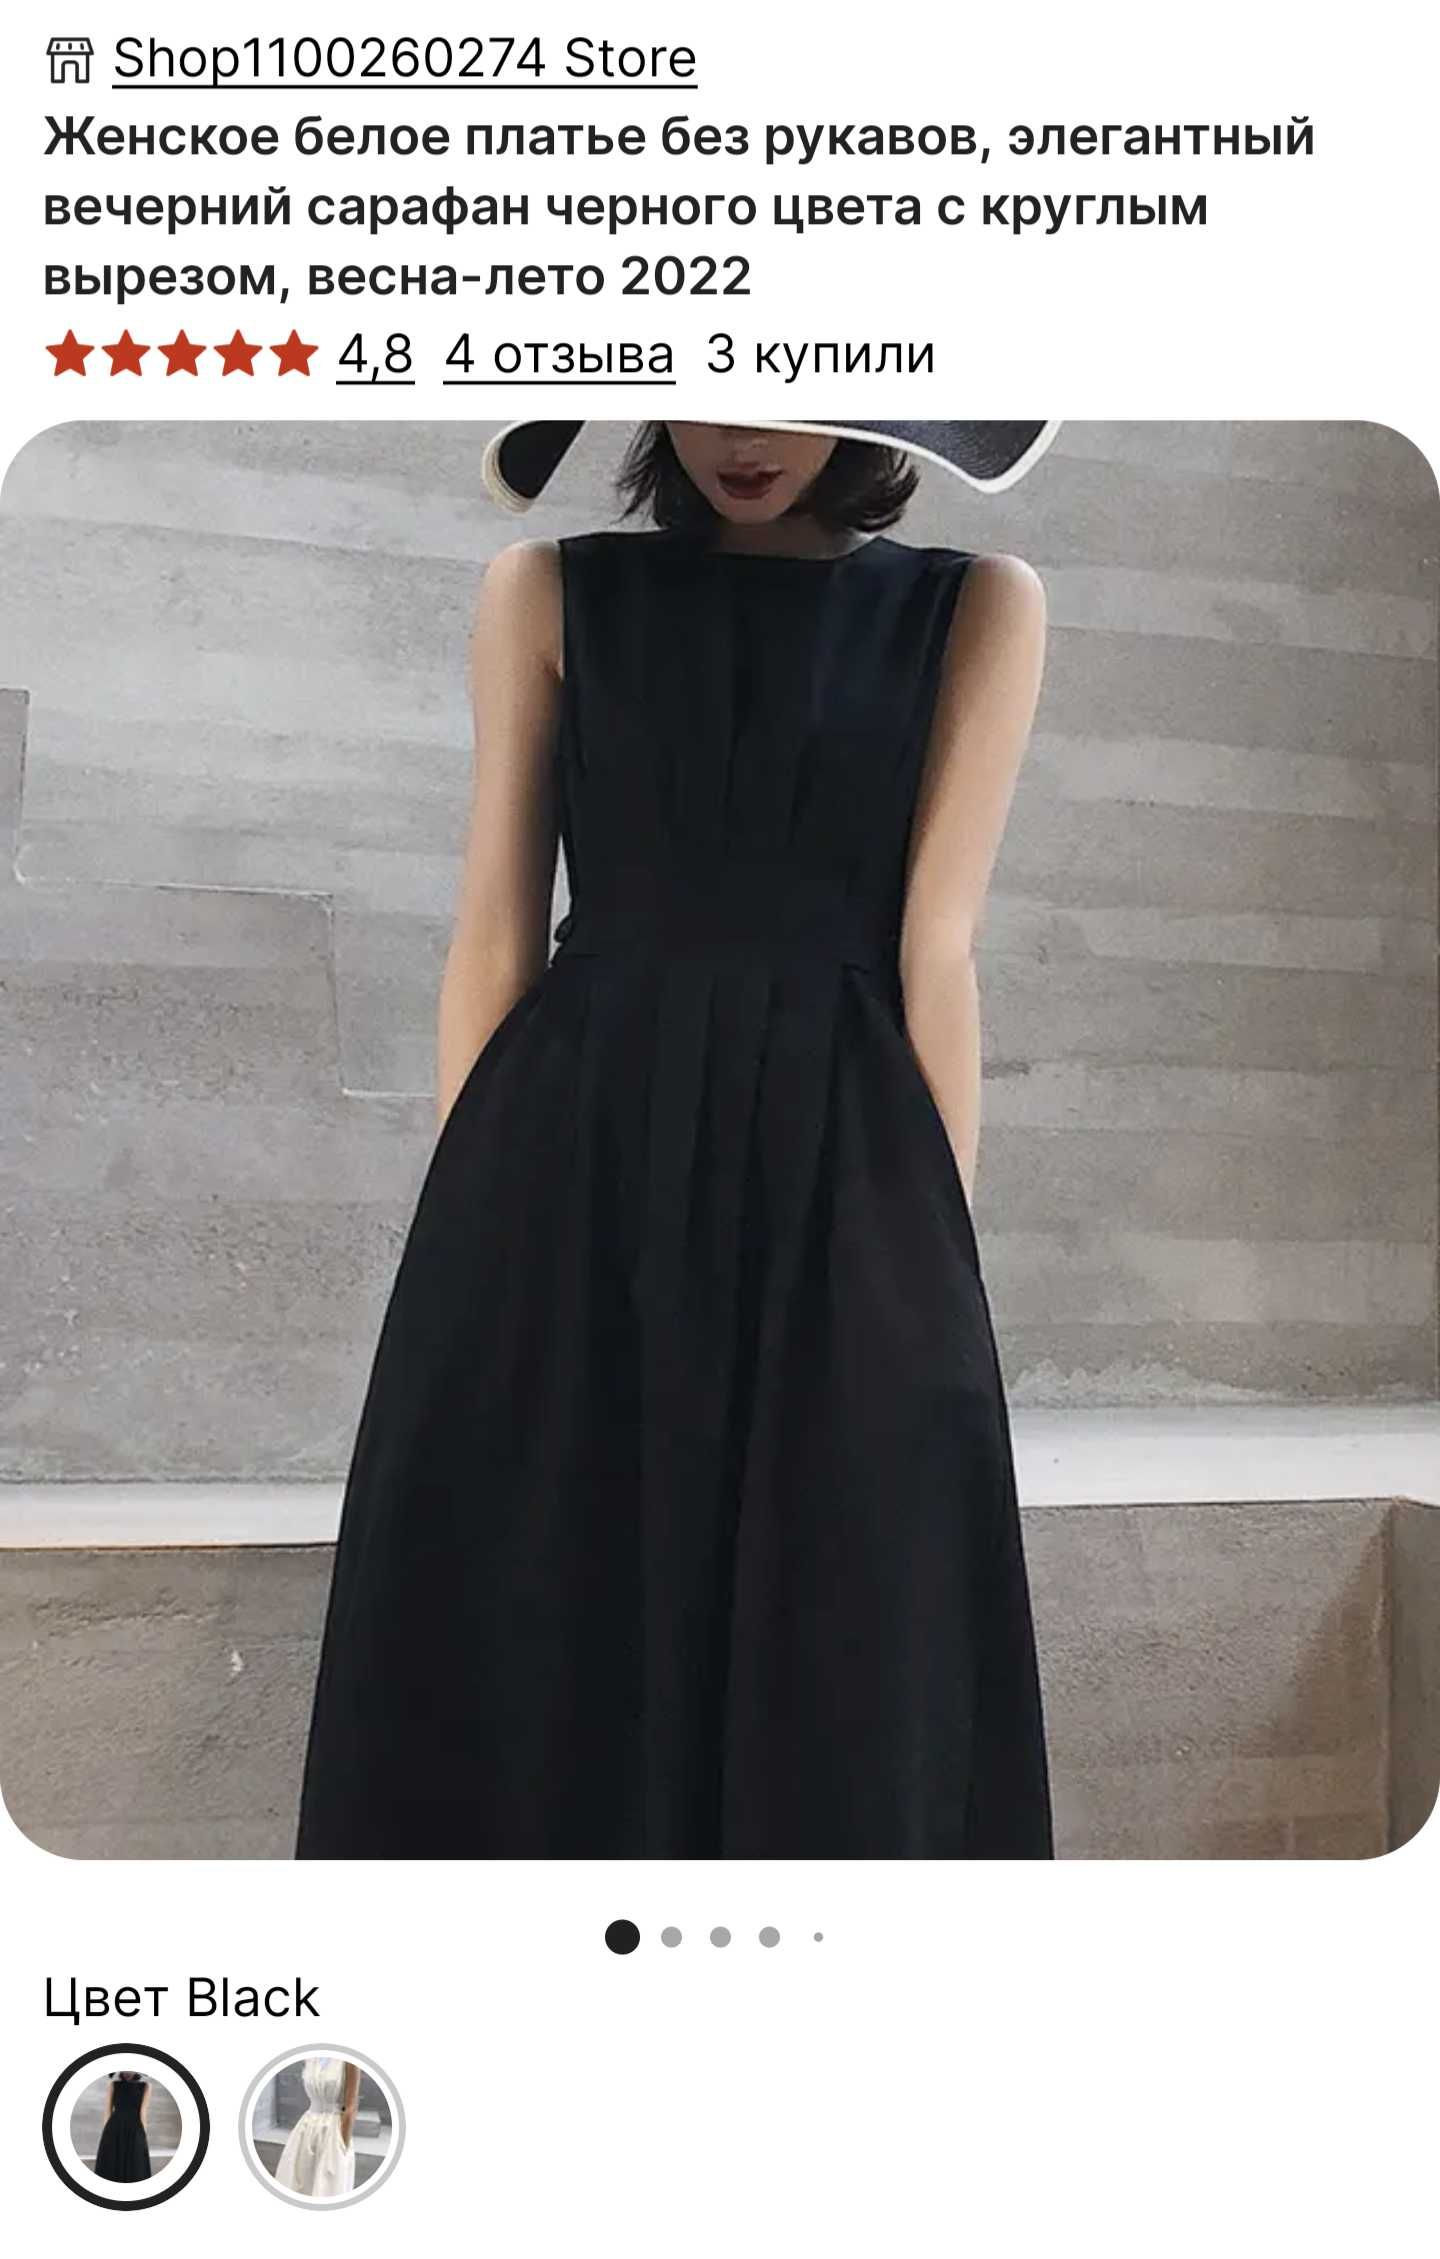 Продаю платье - Алматы